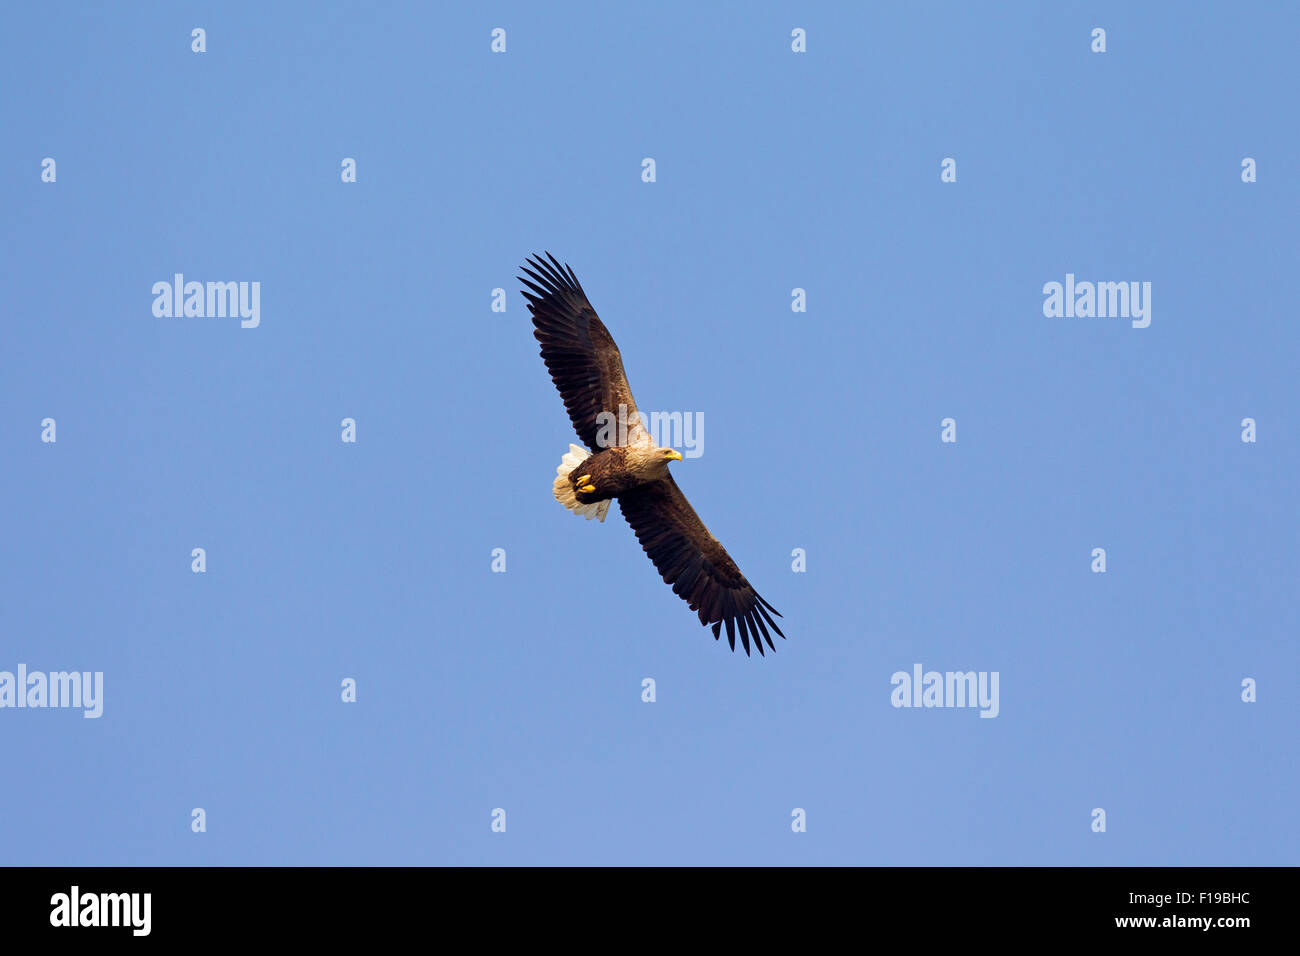 White-tailed Eagle / Sea Eagle / Erne (Haliaeetus albicilla) in flight soaring against blue sky Stock Photo